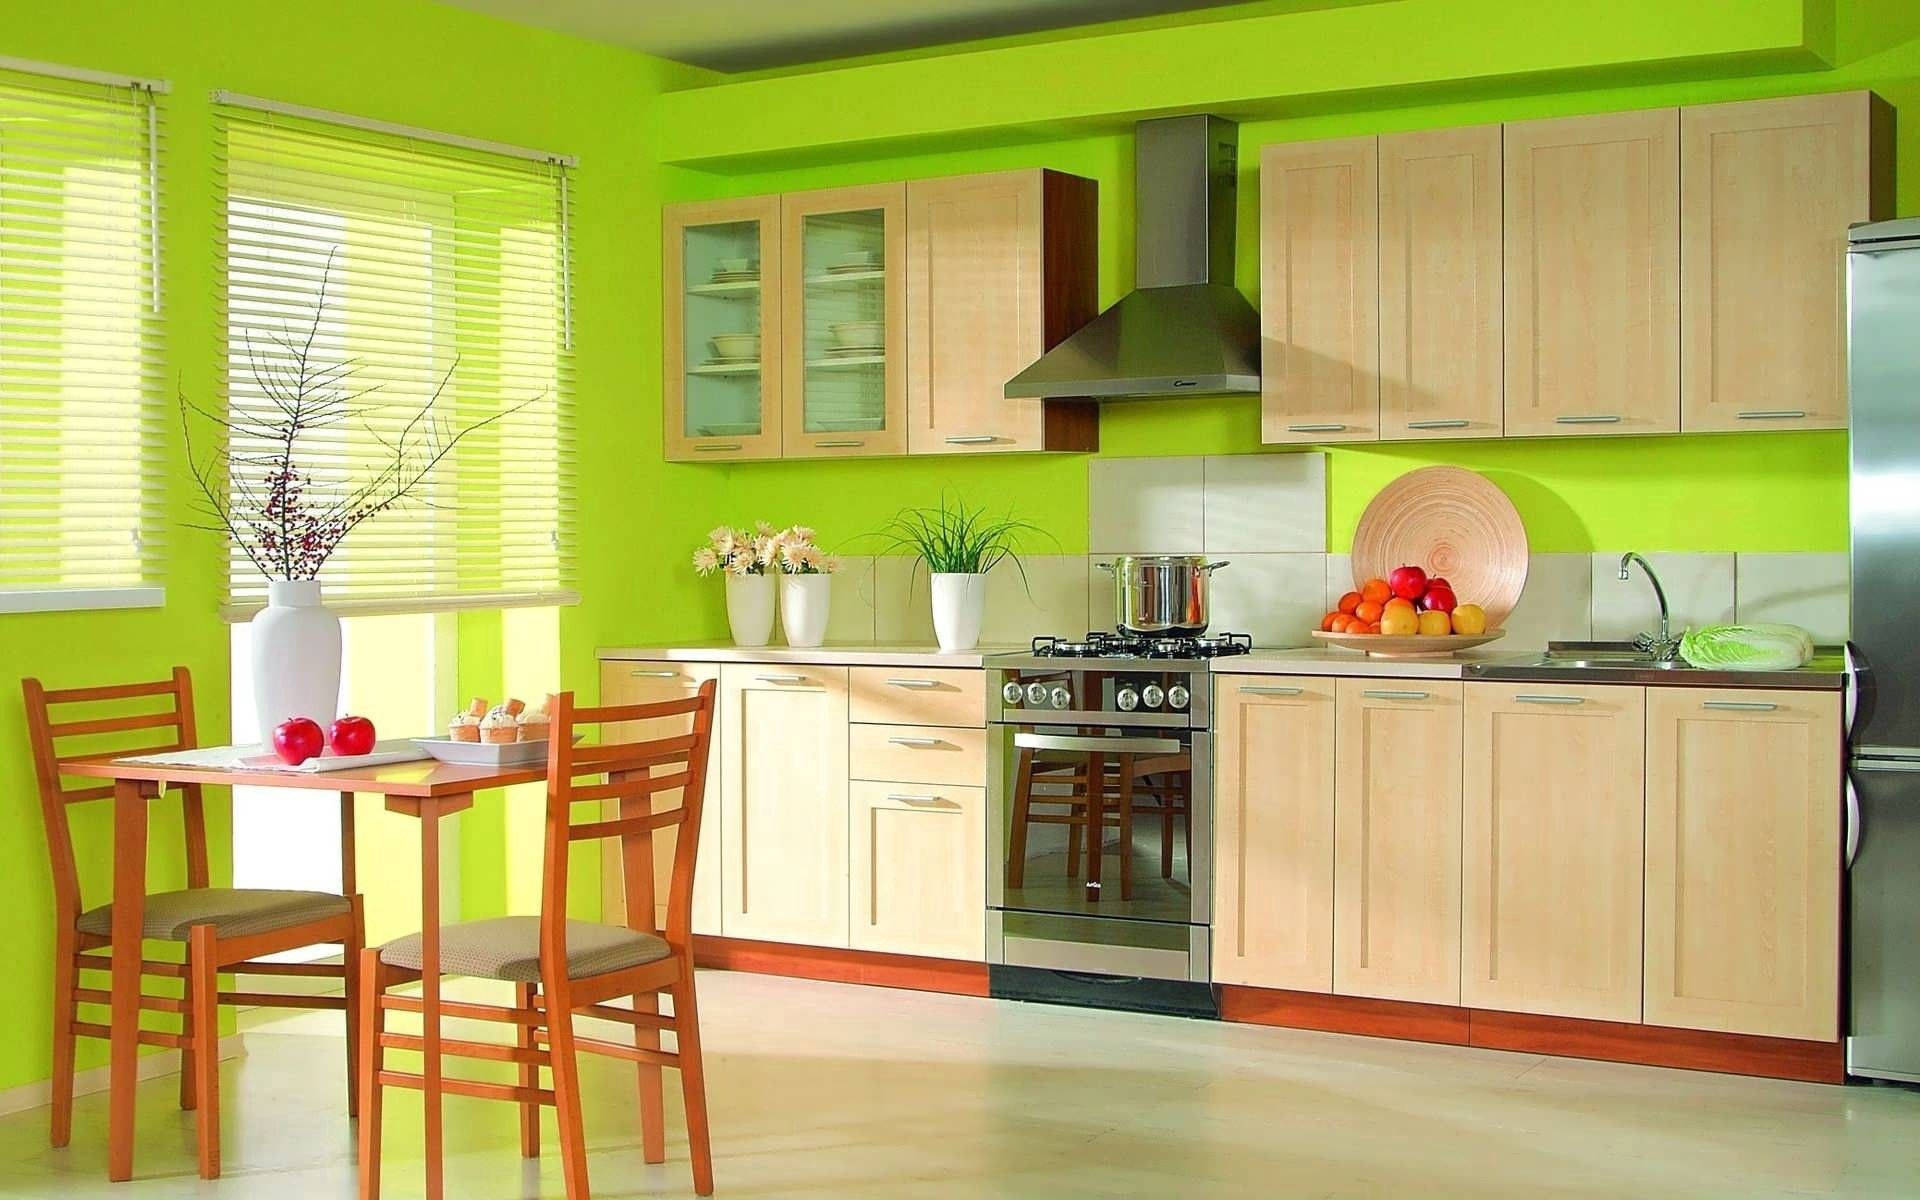 Bright Green Kitchen Background Wallpaper